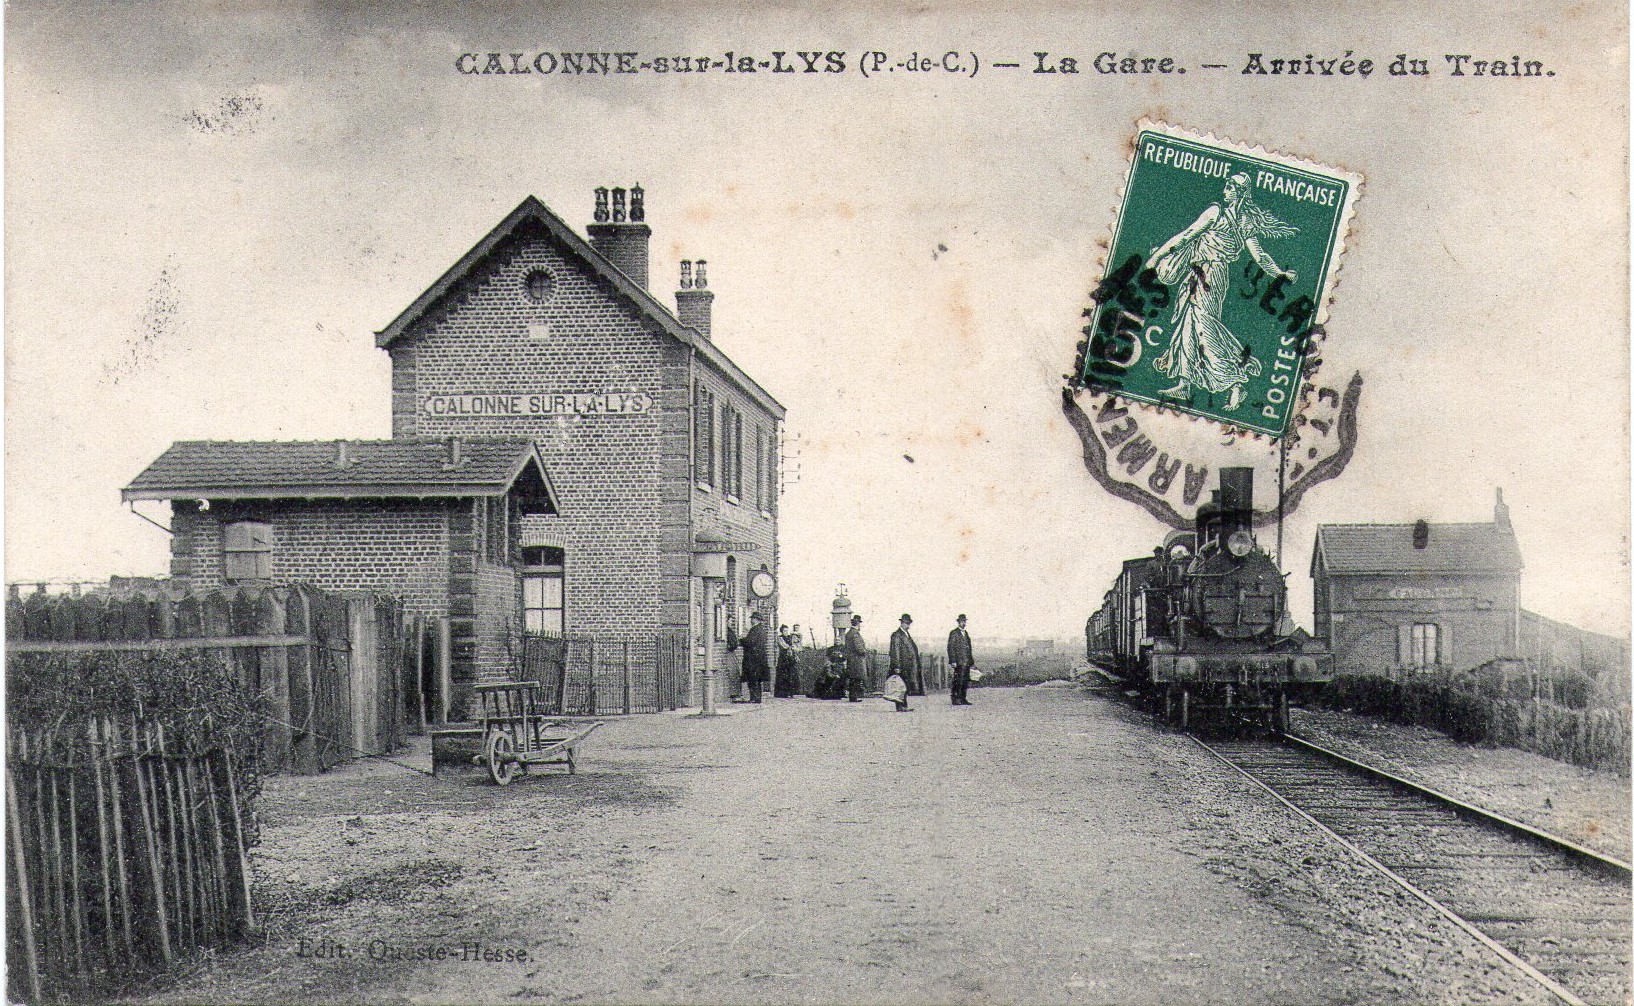 Commune de Calonne-sur-la-LysAccueil > Le village > La vie du village